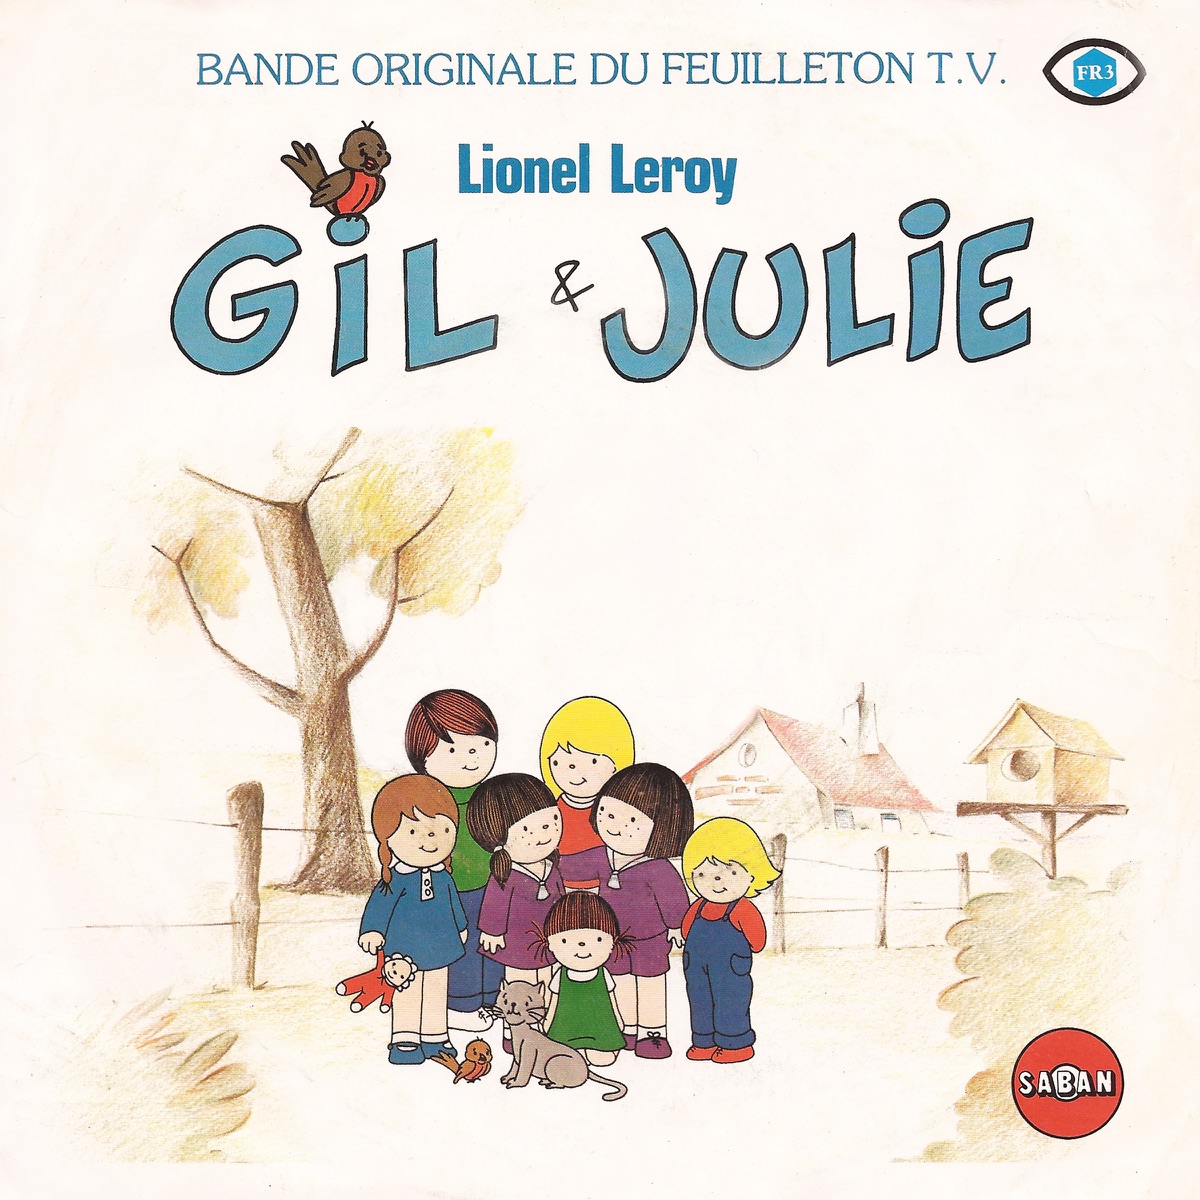 Ulysse revient (Deuxième générique original du dessin animé Ulysse 31) -  Single - Album by Le Groupe Apollo - Apple Music